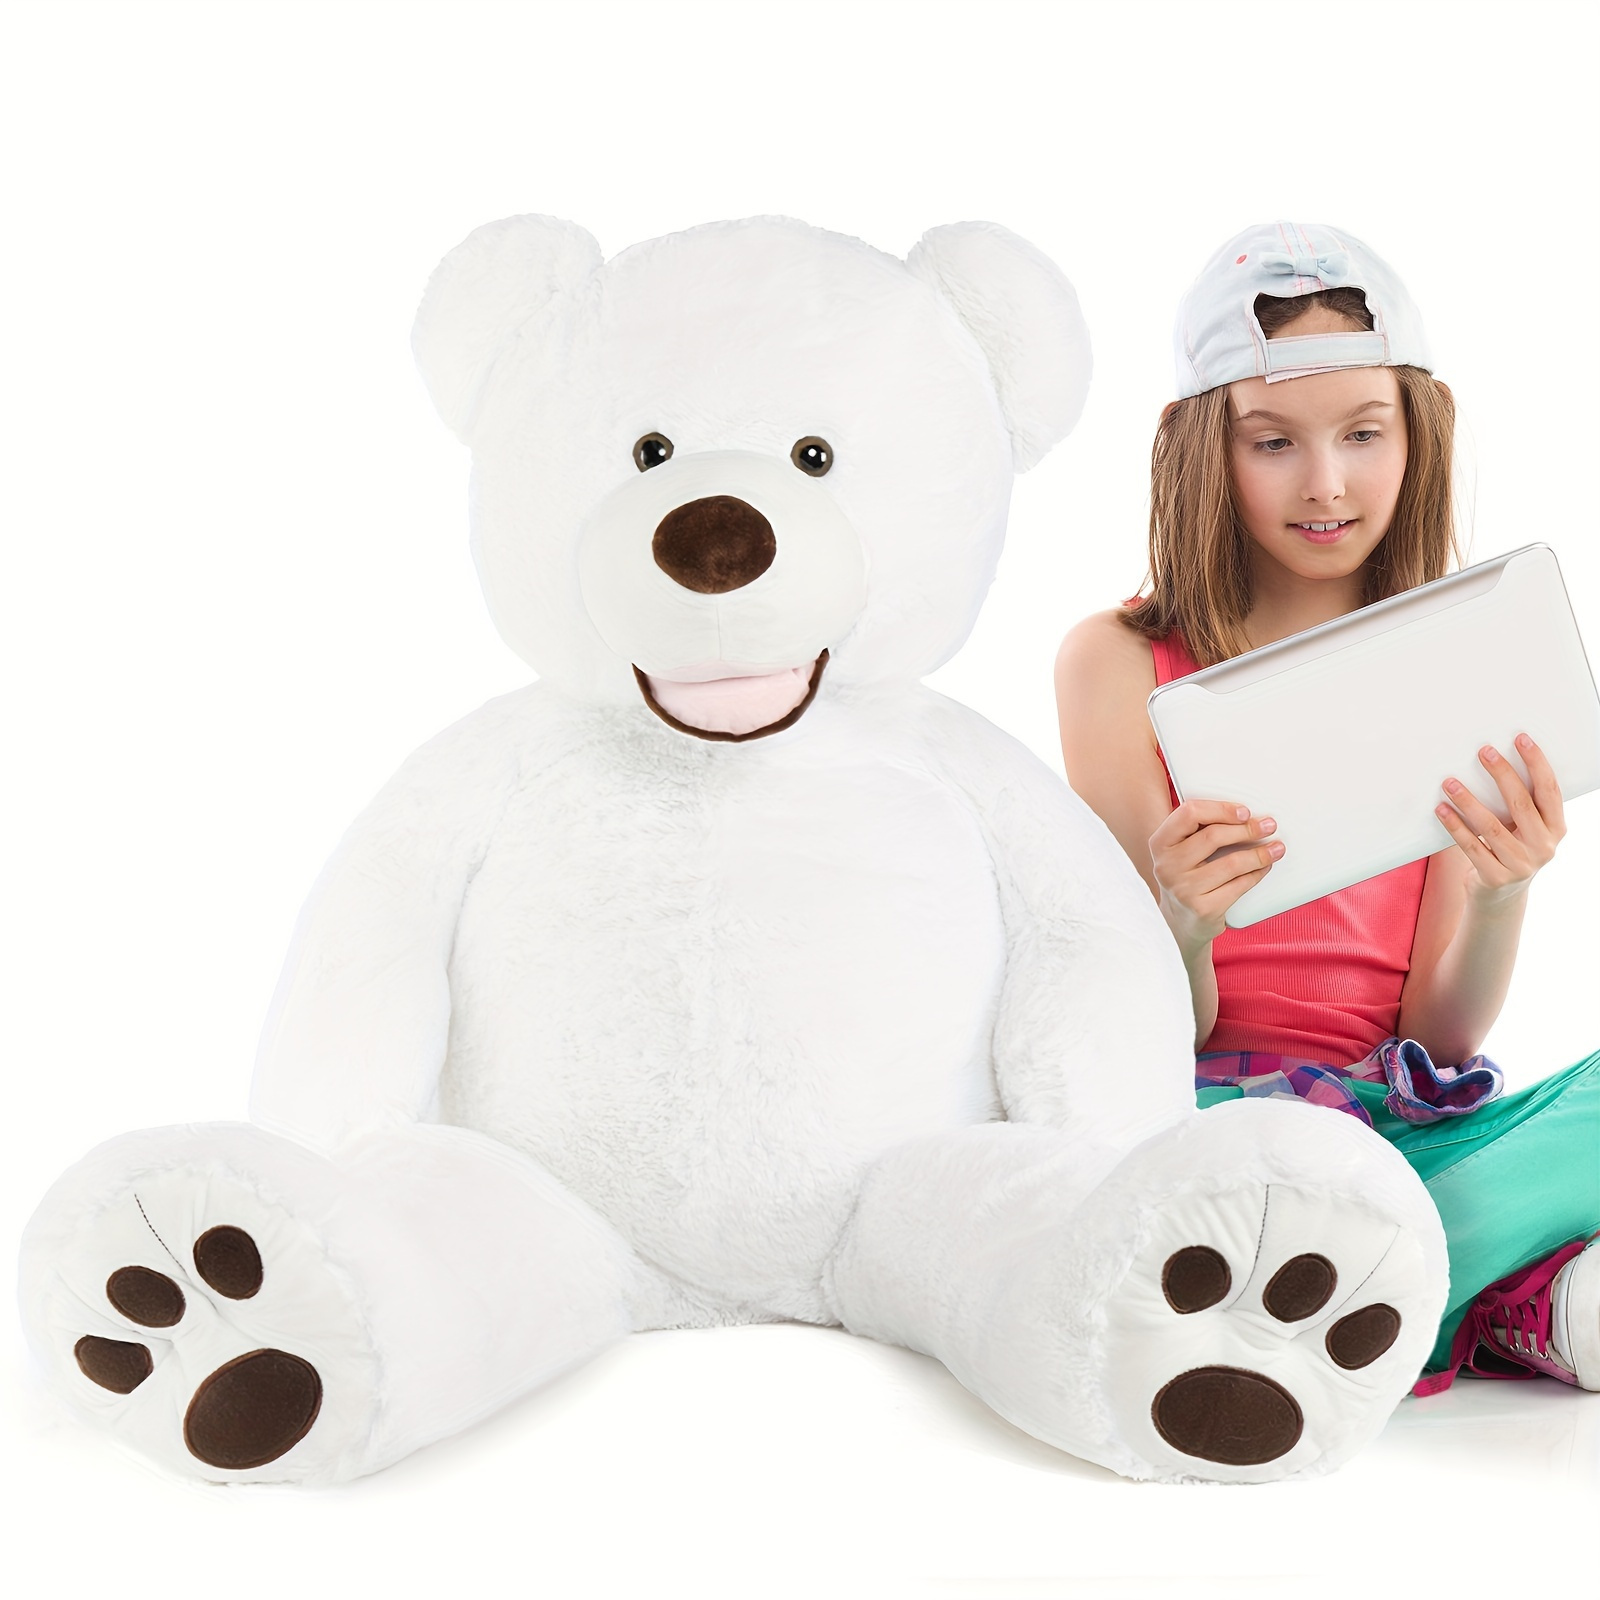 

Giant Teddy Bear 39 Inch Big Teddy Bear Plush Stuffed Animals With Footprints White